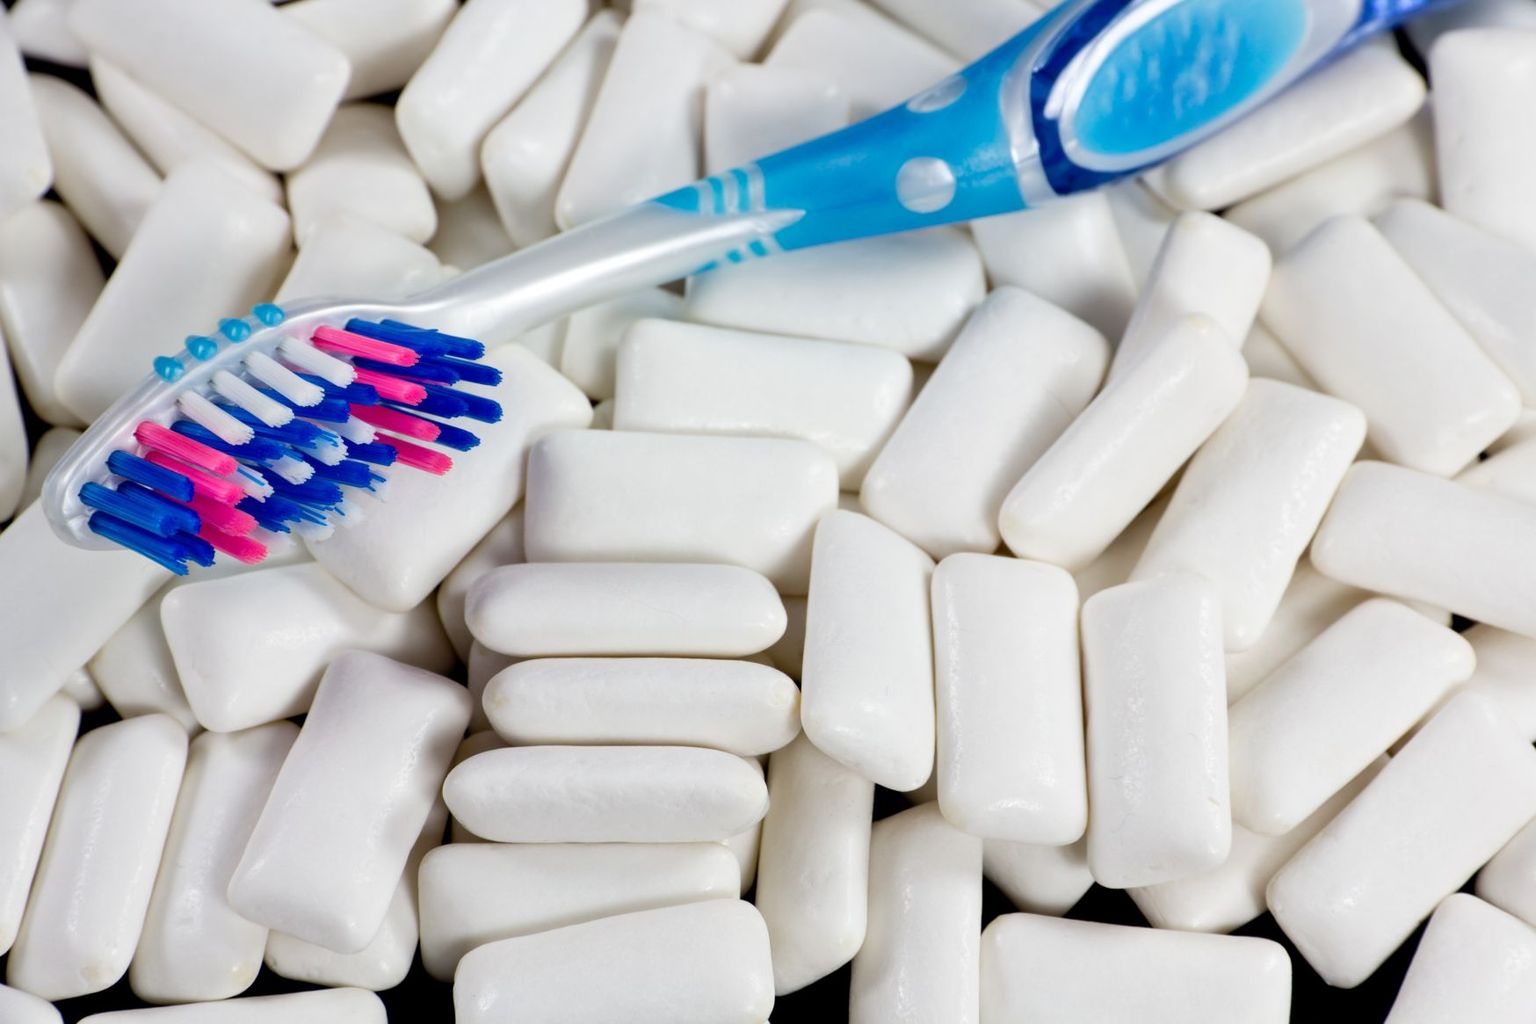 Ksülitooliga näts ei asenda hambapesu, kuid aitab hammaste lagunemist vältida.